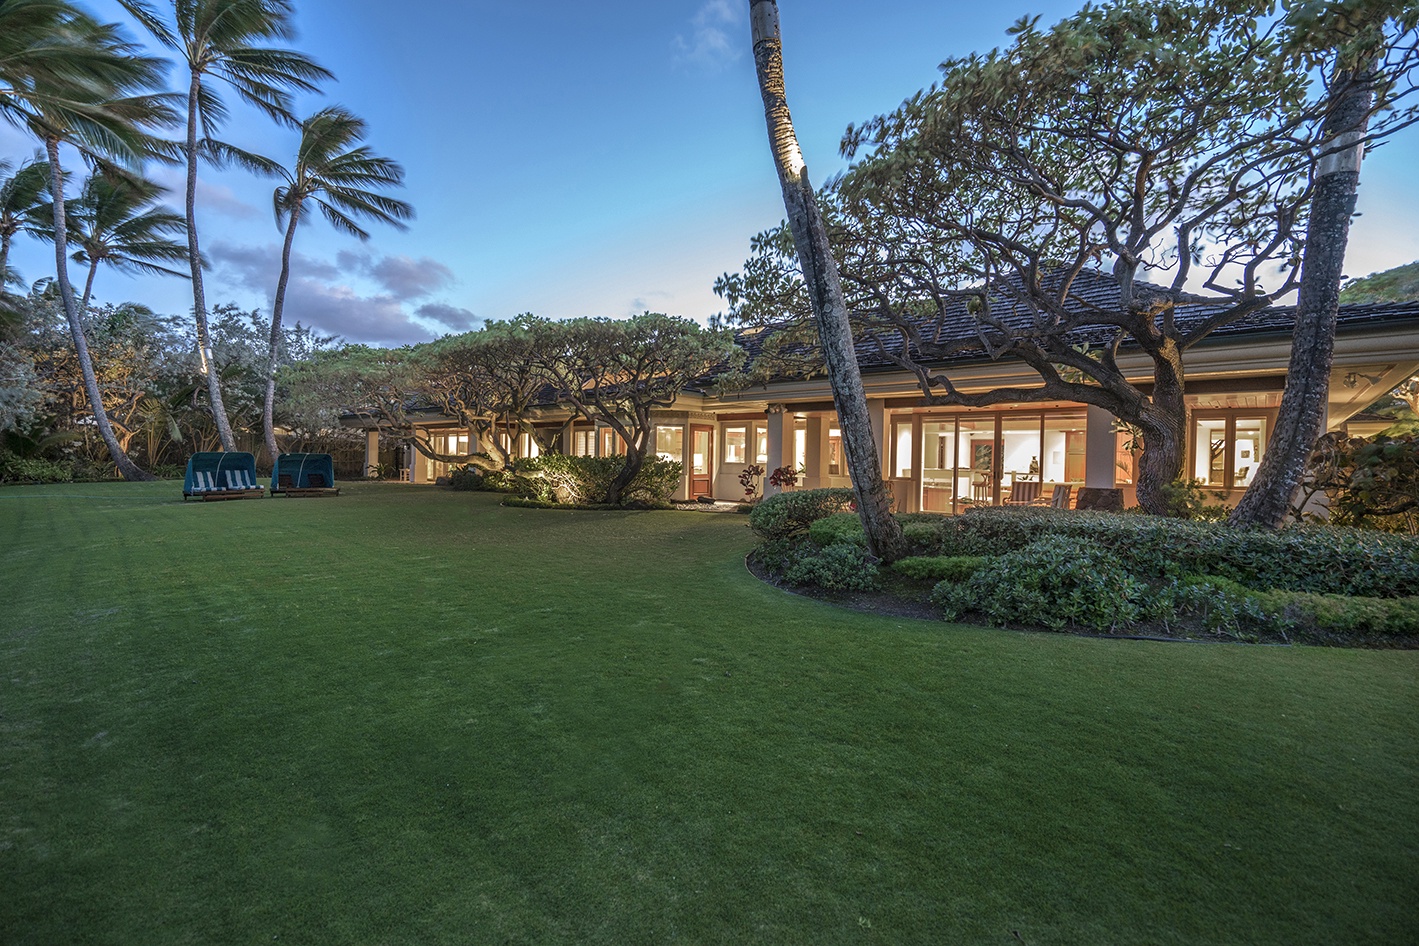 Kailua Vacation Rentals, Kailua's Kai Moena - Guest house: Beach side lawn